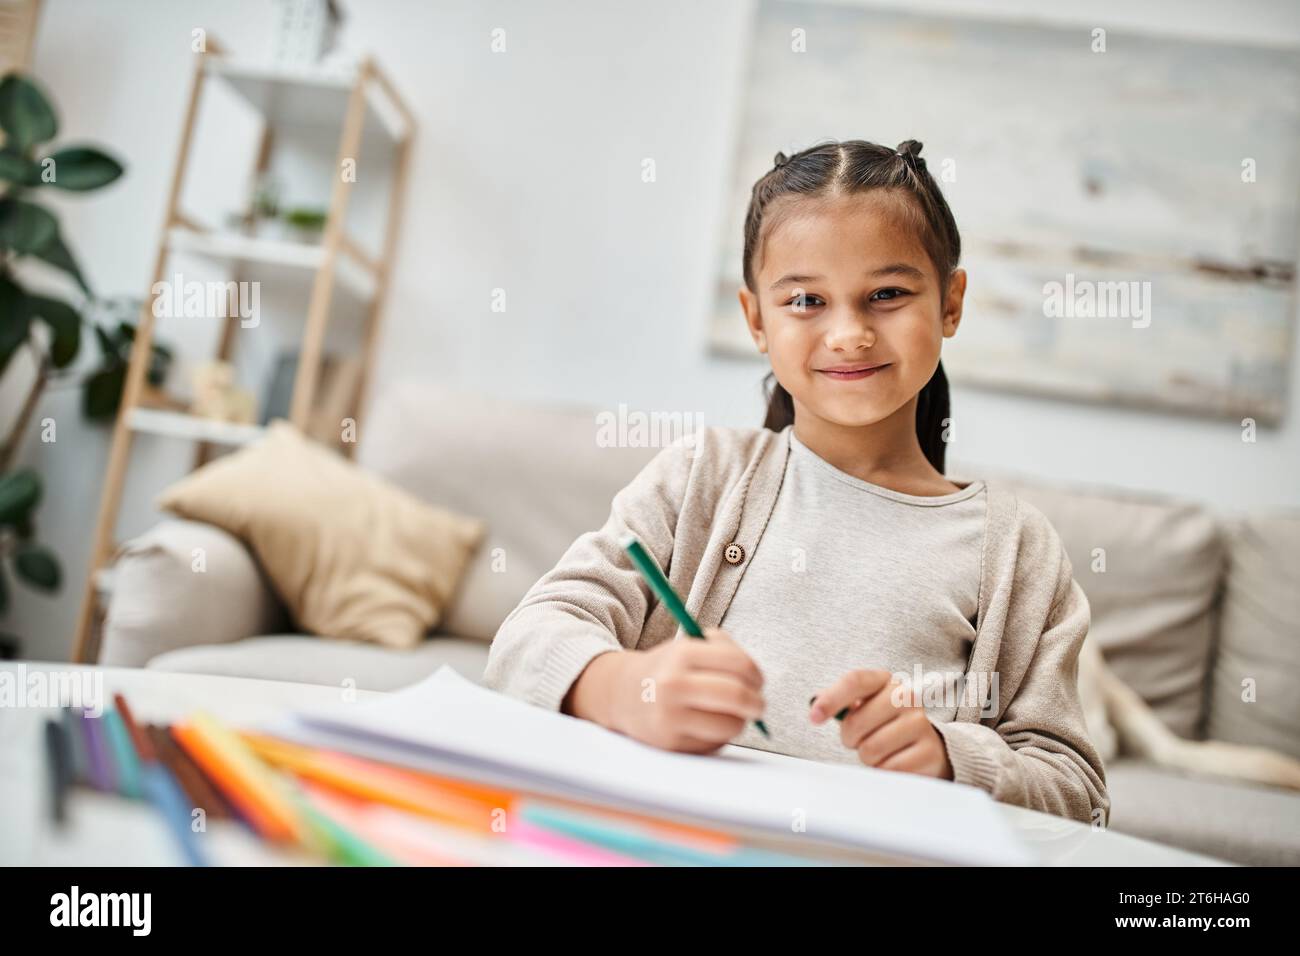 ritratto di una ragazza dell'età elementare felice che disegna con matita colorata e sorride in un appartamento moderno Foto Stock